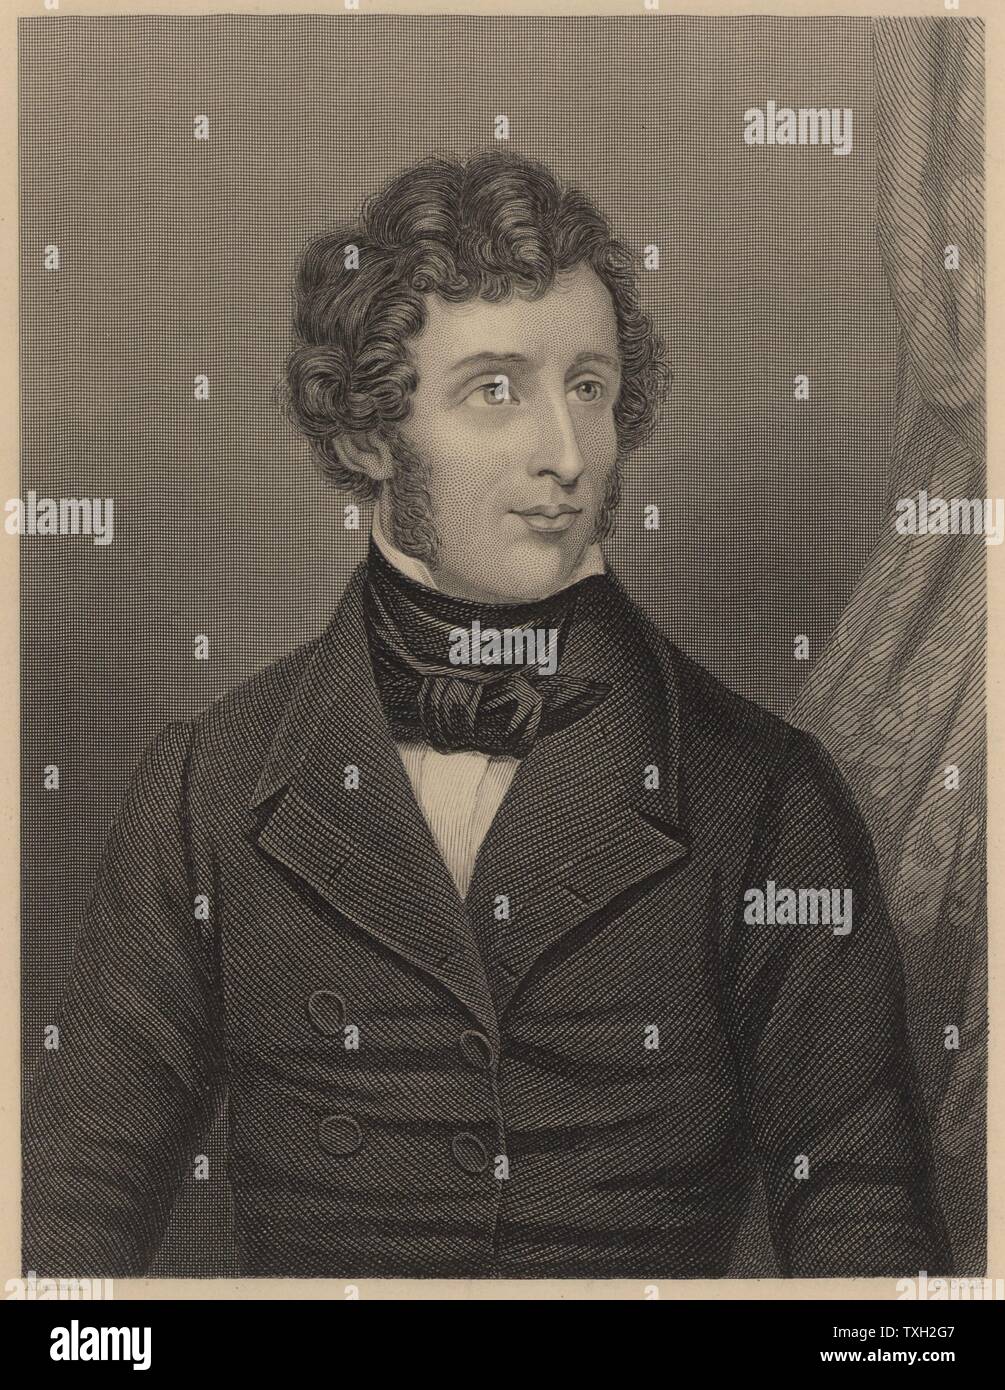 Friedrich Wohler (1800-1882), chimiste organique allemande. Aluminium isolé (1827), la synthèse de l'urée (1828), découvert le béryllium (1828), et obtenu à partir de l'acétylène carbure de calcium. De James Sheridan Muspratt "Chimie" (Londres, c1860). La gravure. Banque D'Images